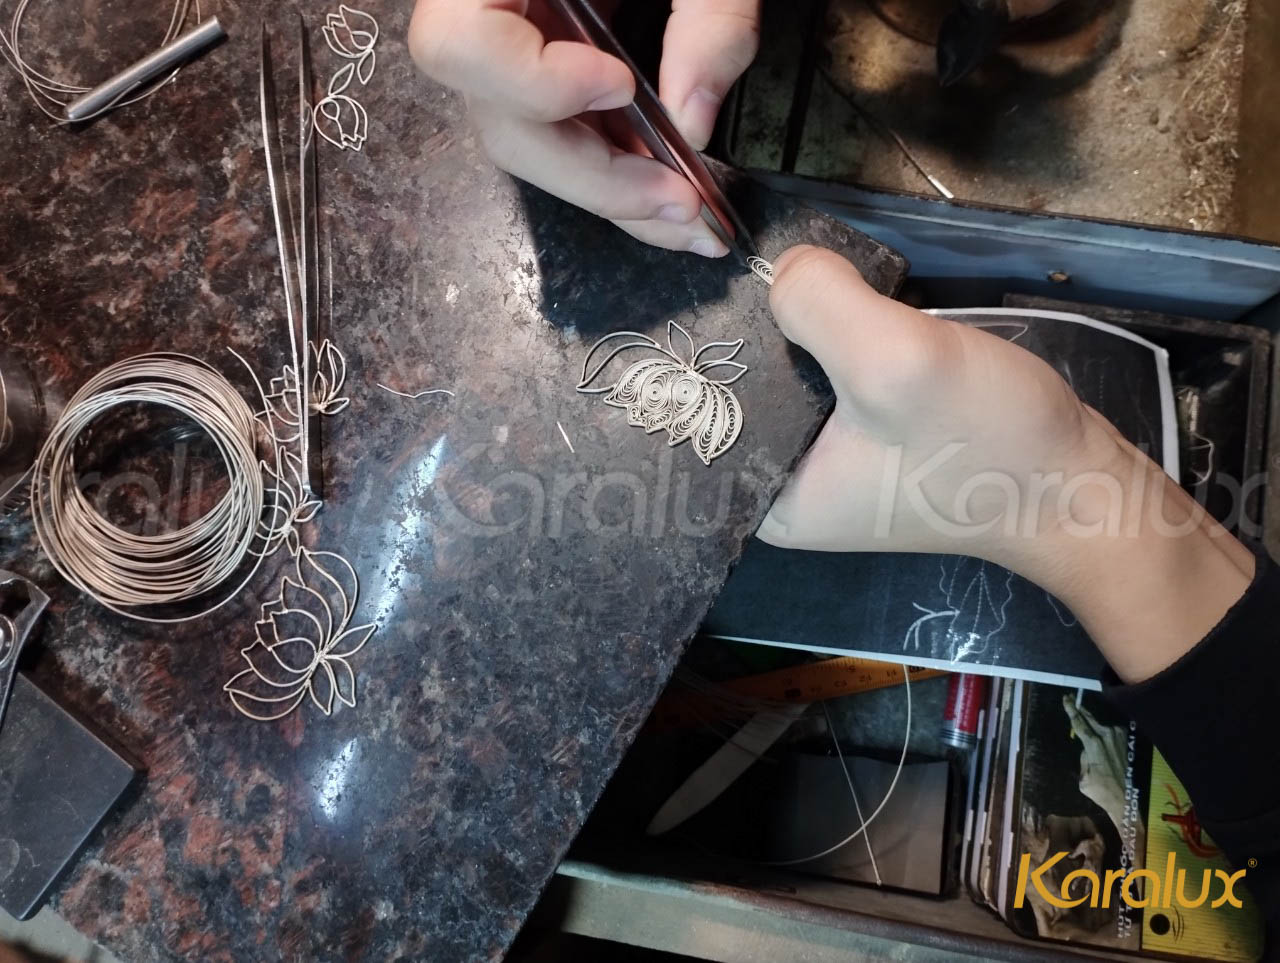 Nghệ nhân kim hoàn Karalux đang uốn và hàn các sợi bạc thành hoa sen. Sau khi hoàn thiện, các chi tiết bạc sẽ được mạ vàng và gắn lên tranh.